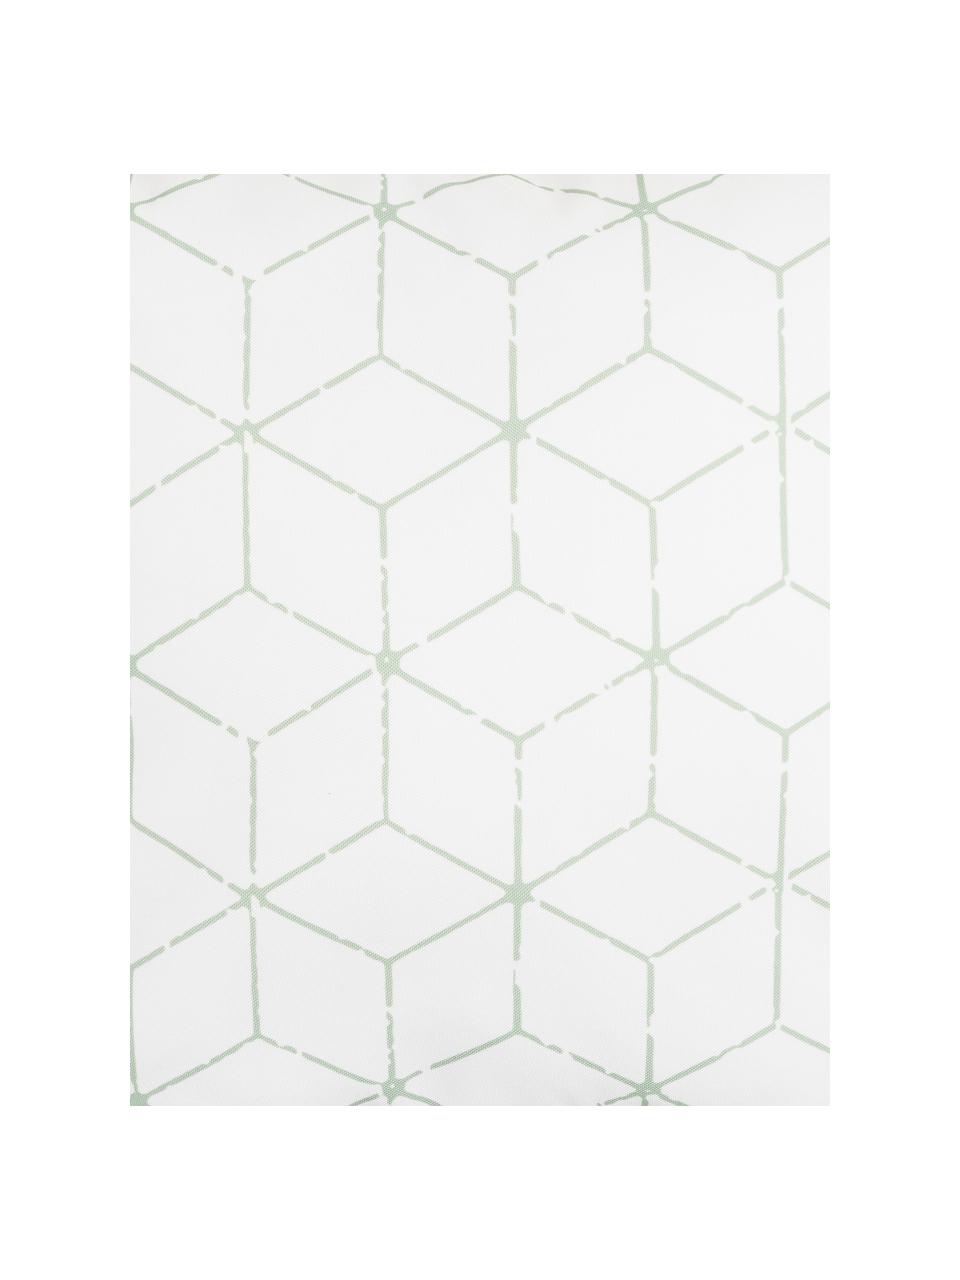 Outdoor-Kissen Cube mit grafischem Muster in Salbeigrün/Weiß, mit Inlett, 100% Polyester, Weiß, Grün, 47 x 47 cm